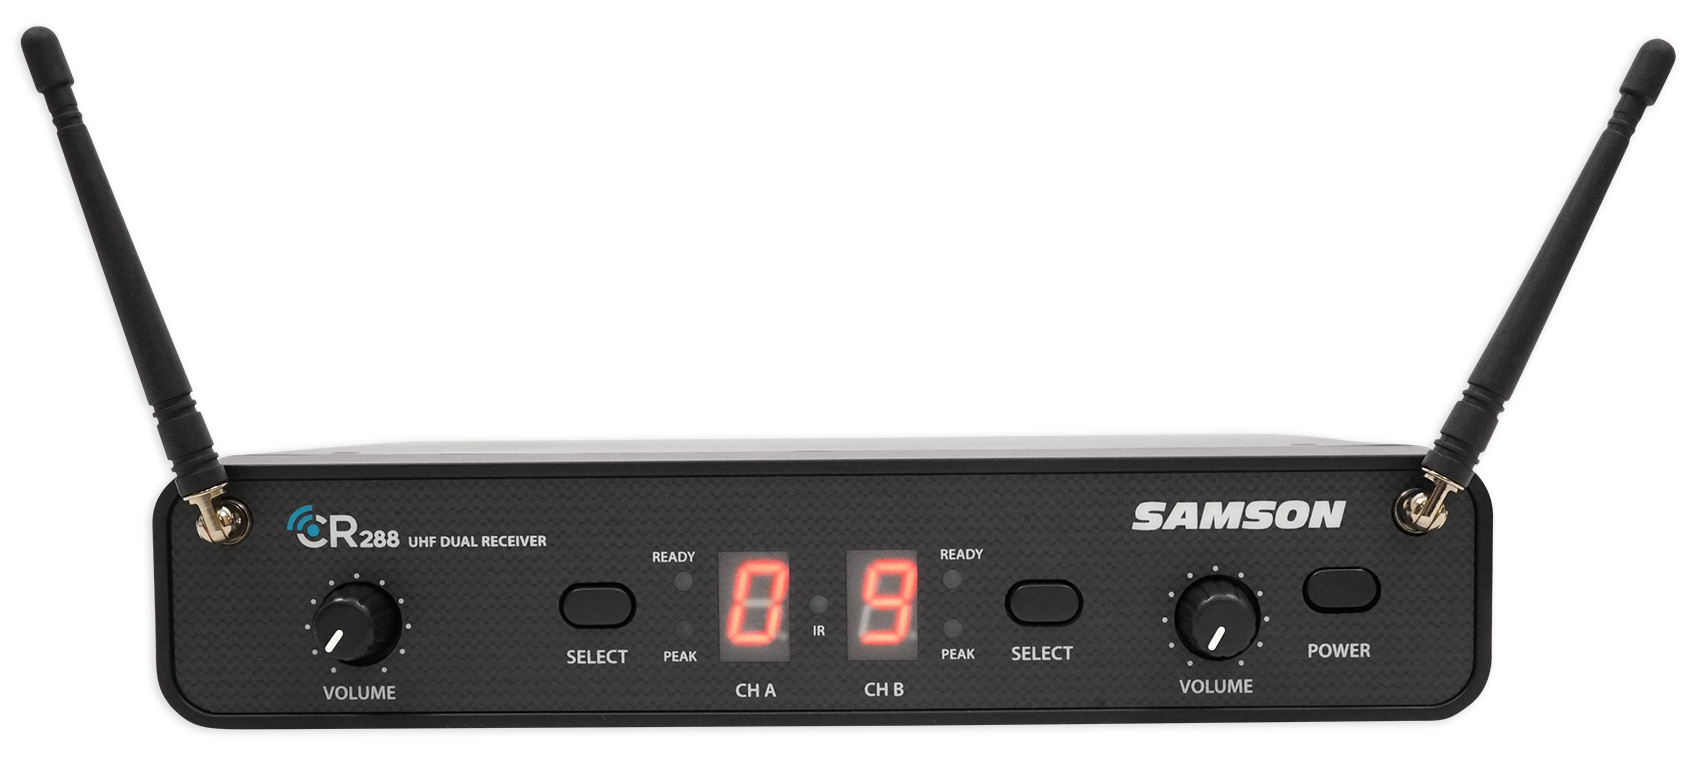 samson sound deck products